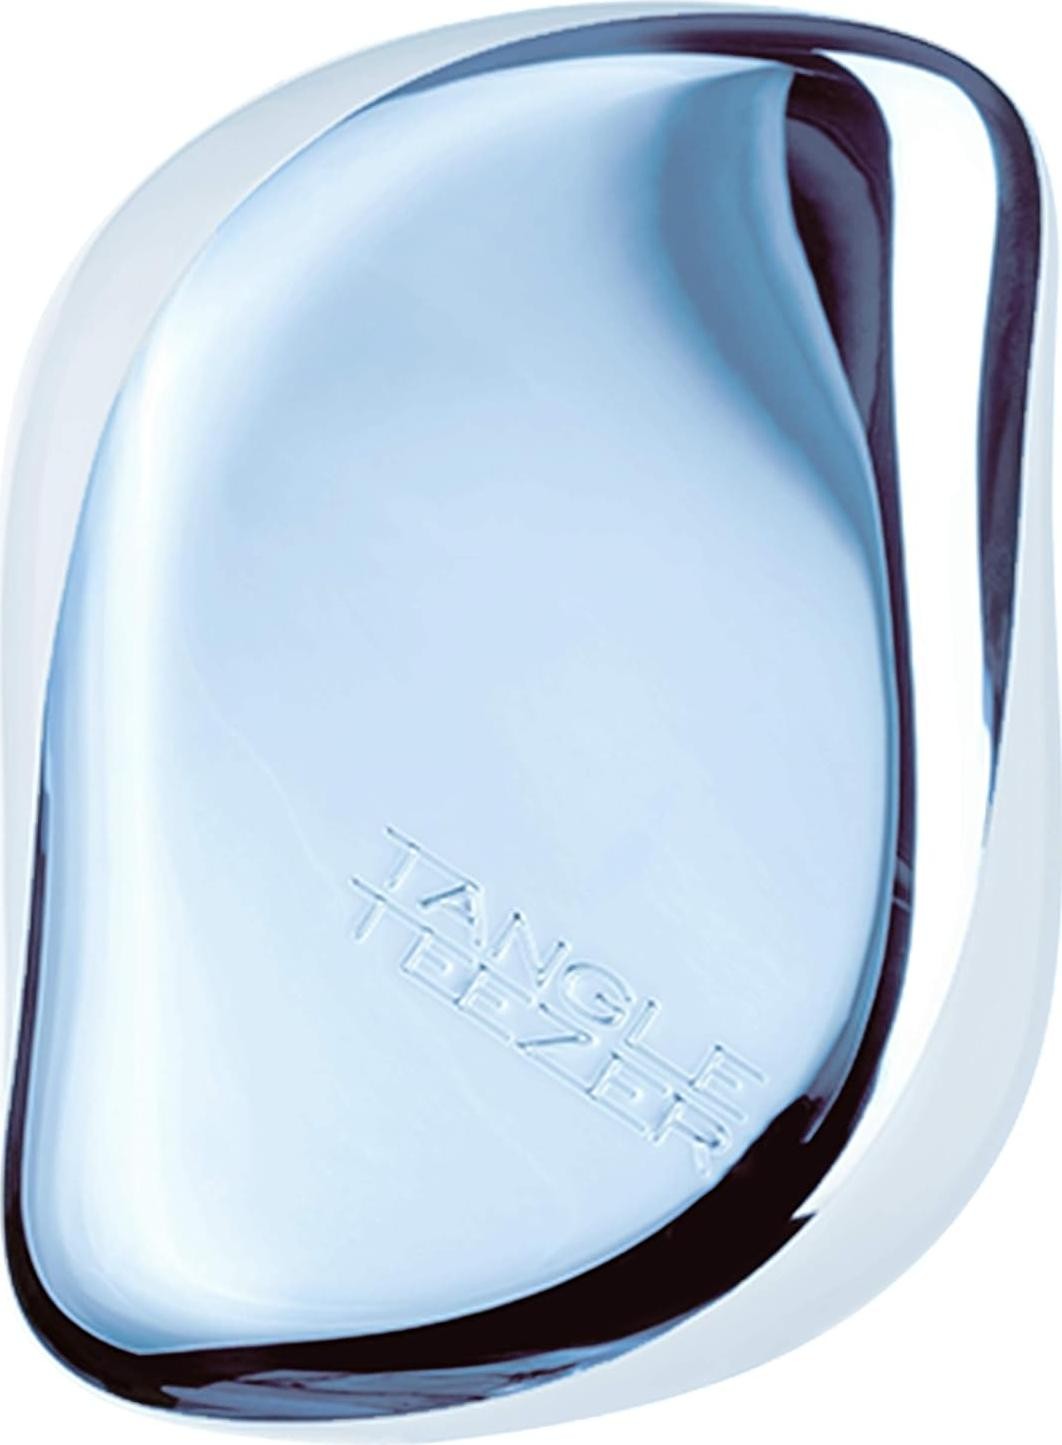 Zdjęcia - Szczotka do włosów Tangle Teezer Compact Styler Hairbrush Baby Blue Chrome PEL-CI-OTH-0534 